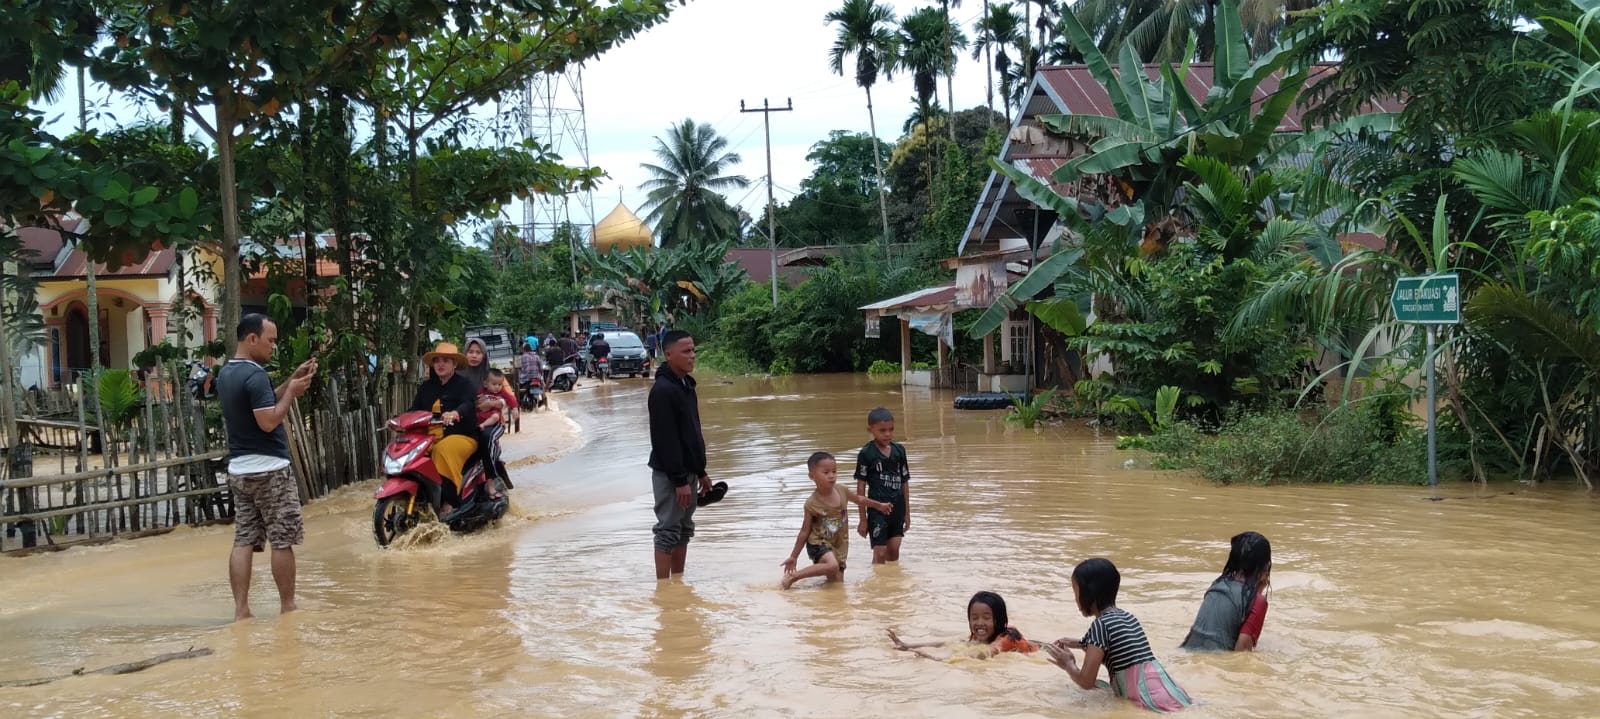 83 Rumah Terendam Banjir di Sarolangun, Warga Evakuasi Barang ke Tempat Keluarga